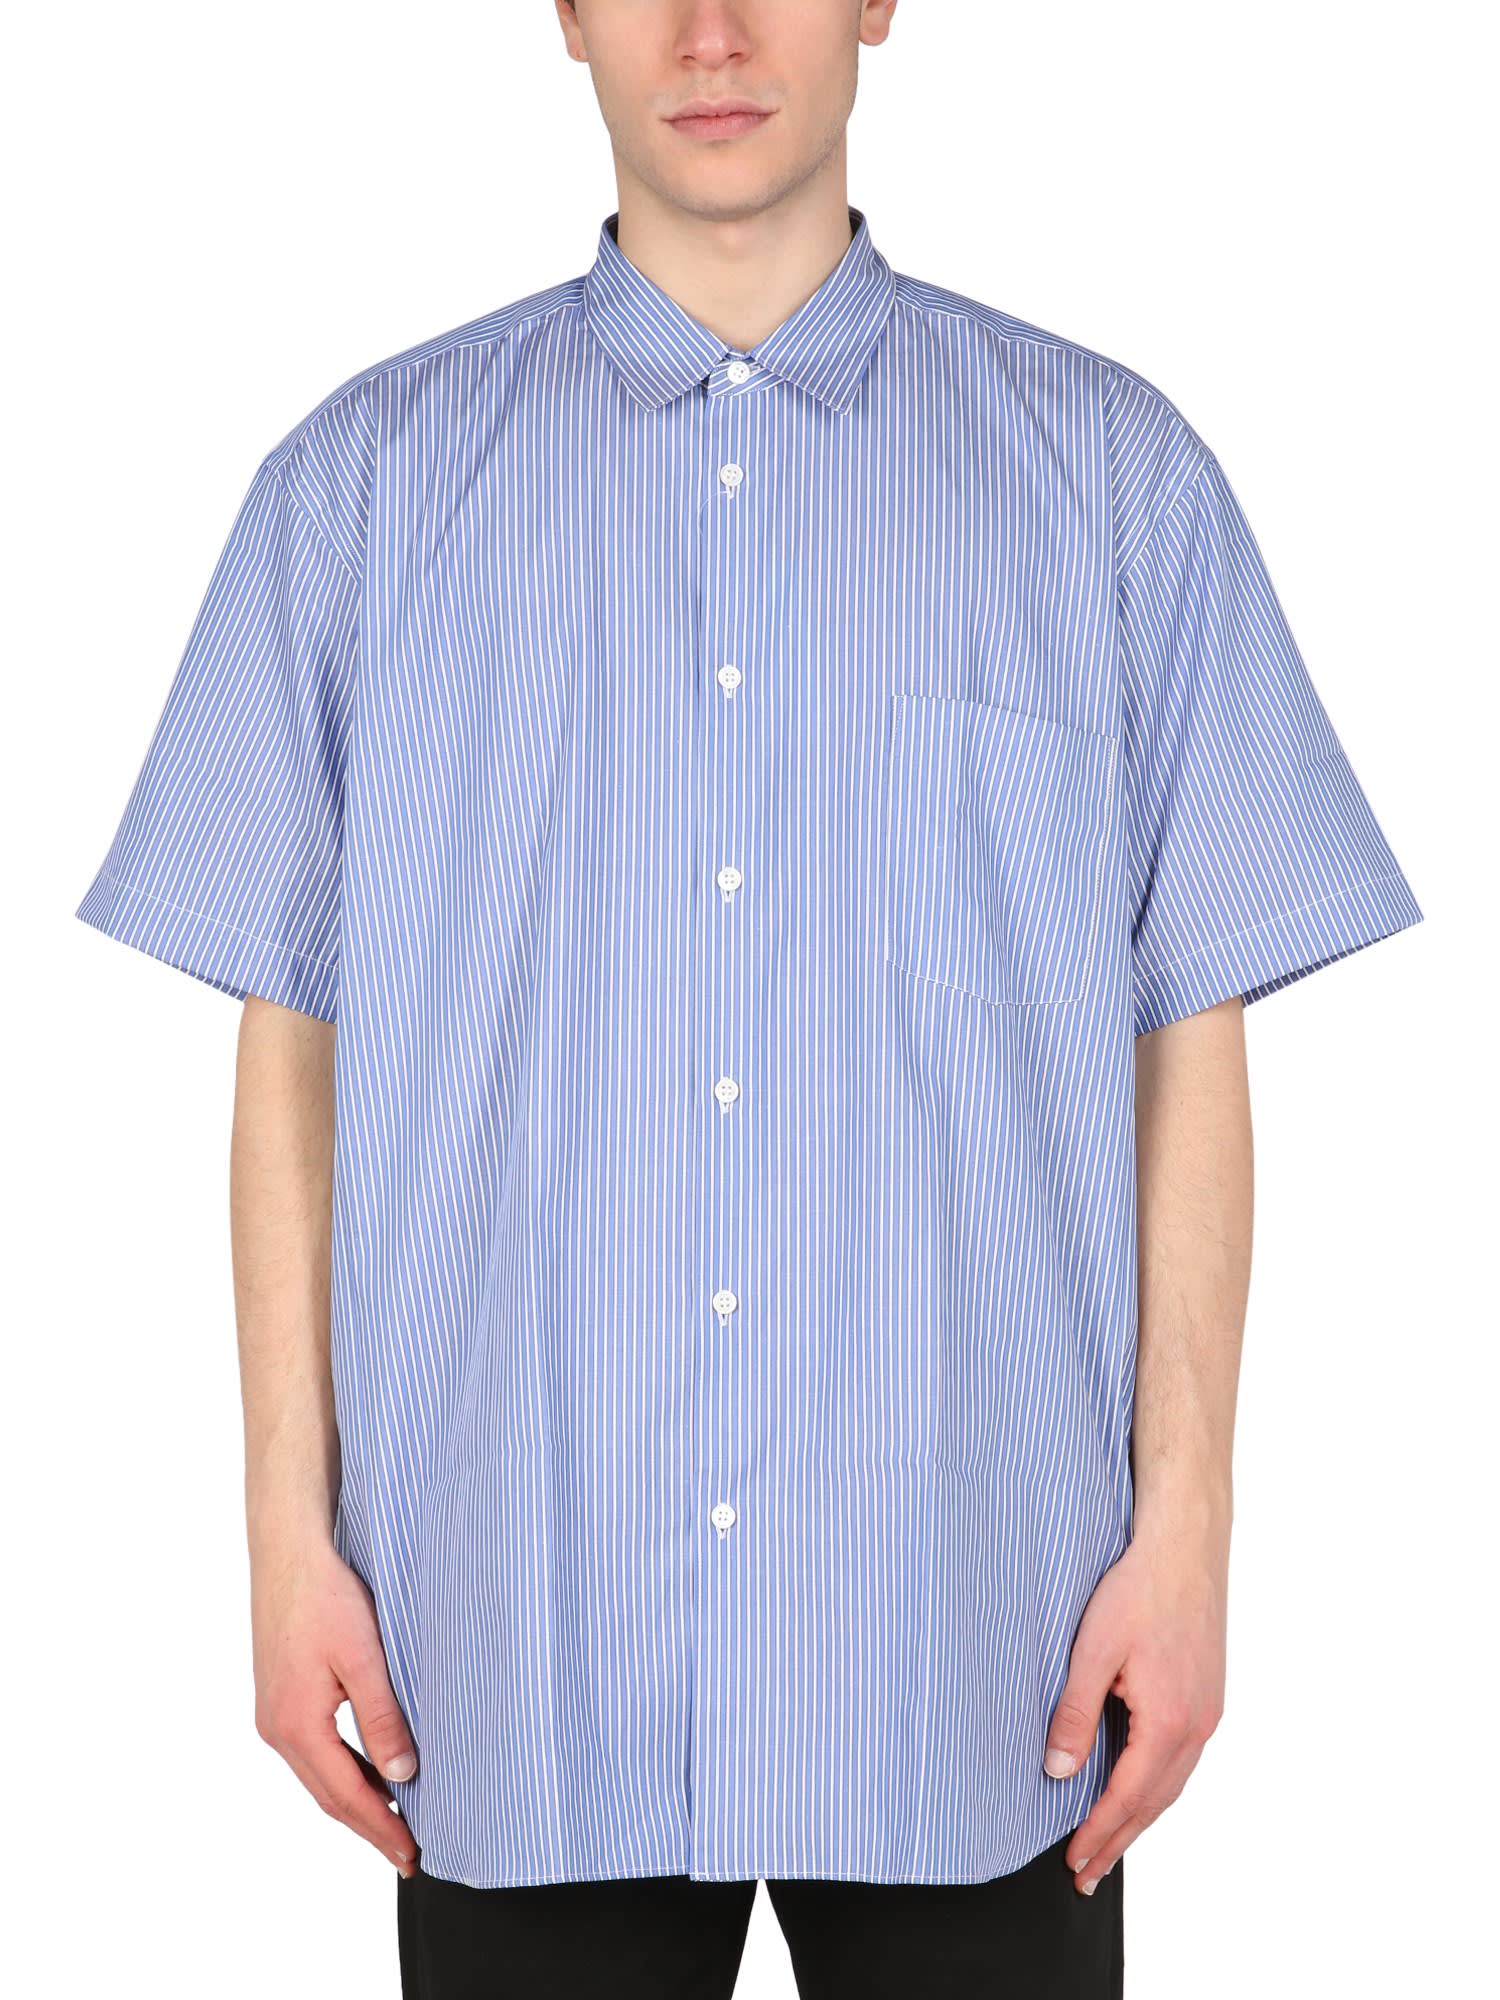 Comme des Garçons Shirt Shirt With Striped Pattern